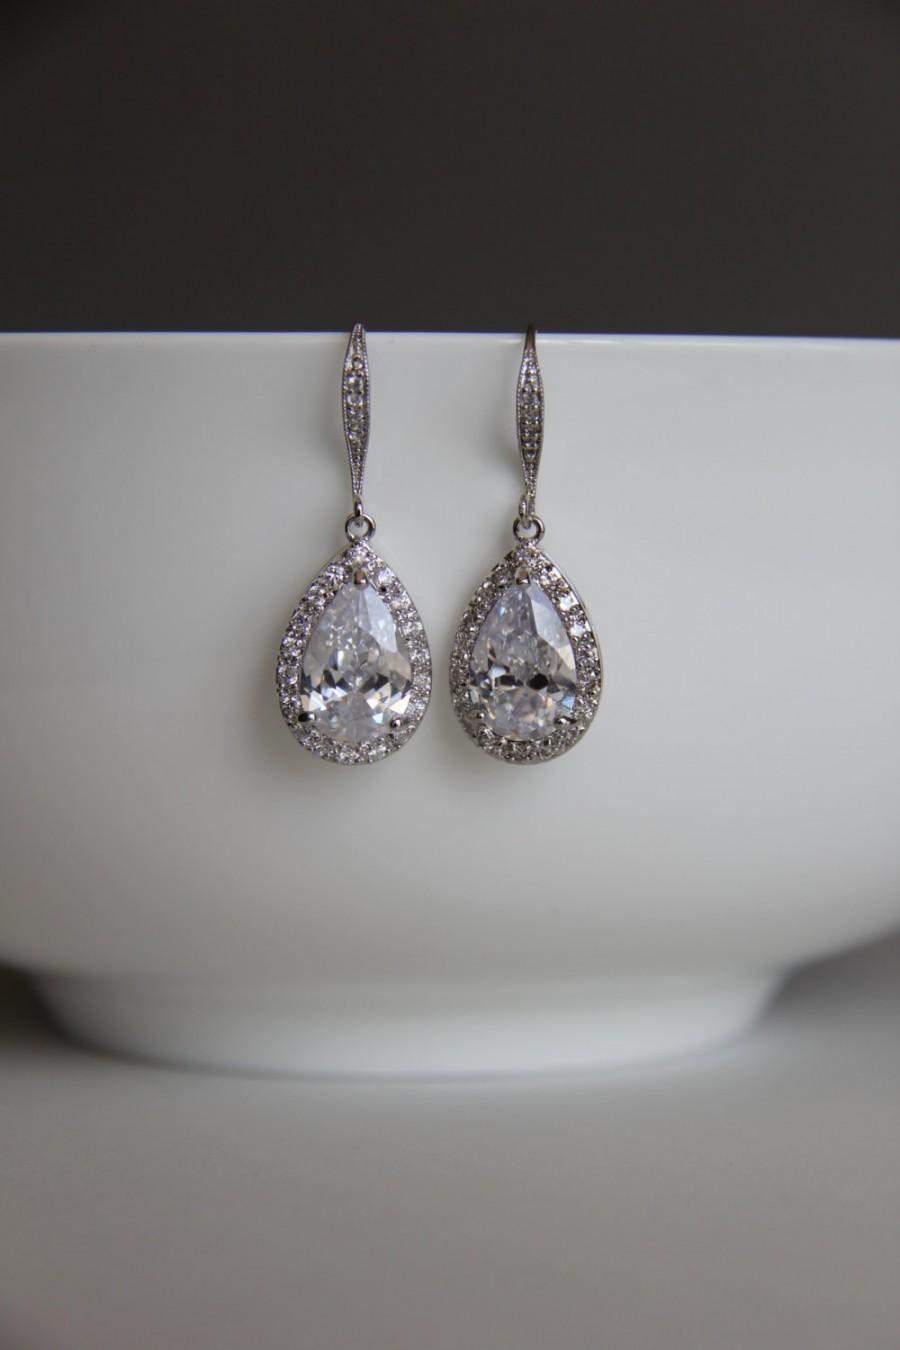 Mariage - Bridal earrings, cz earrings, wedding earrings, bridesmaid earrings, bridal jewelry, wedding jewelry, cz jewelry, dangley earrings